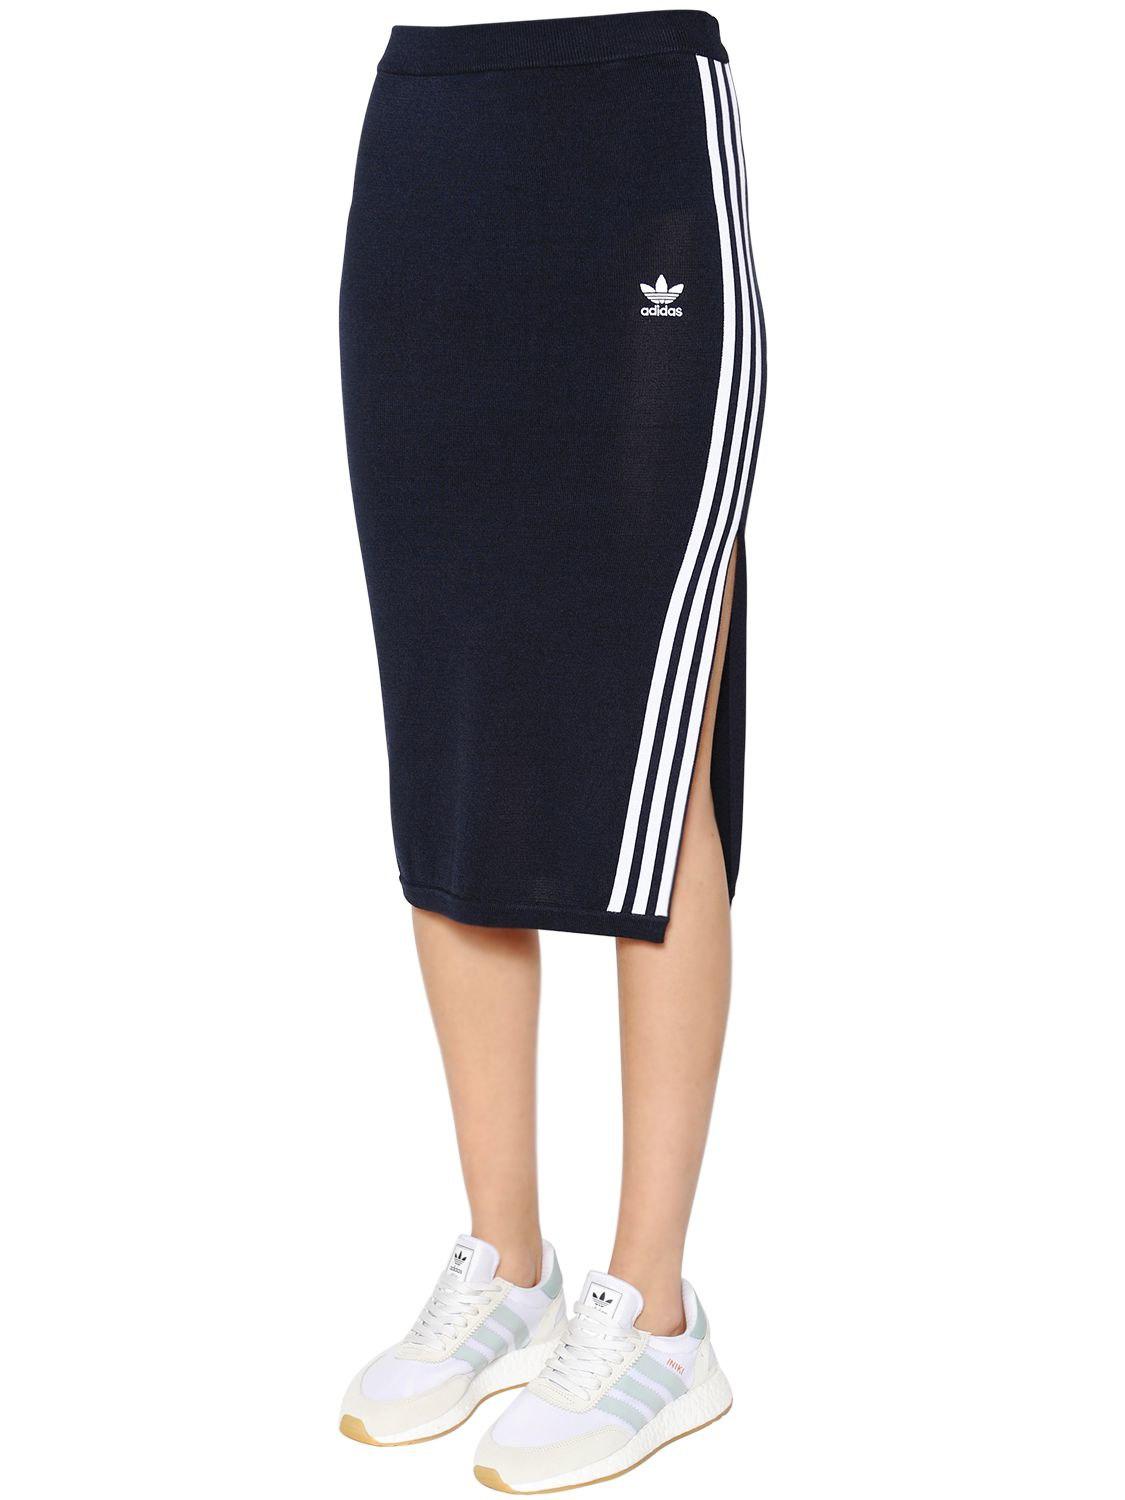 adidas 3 stripe knit dress